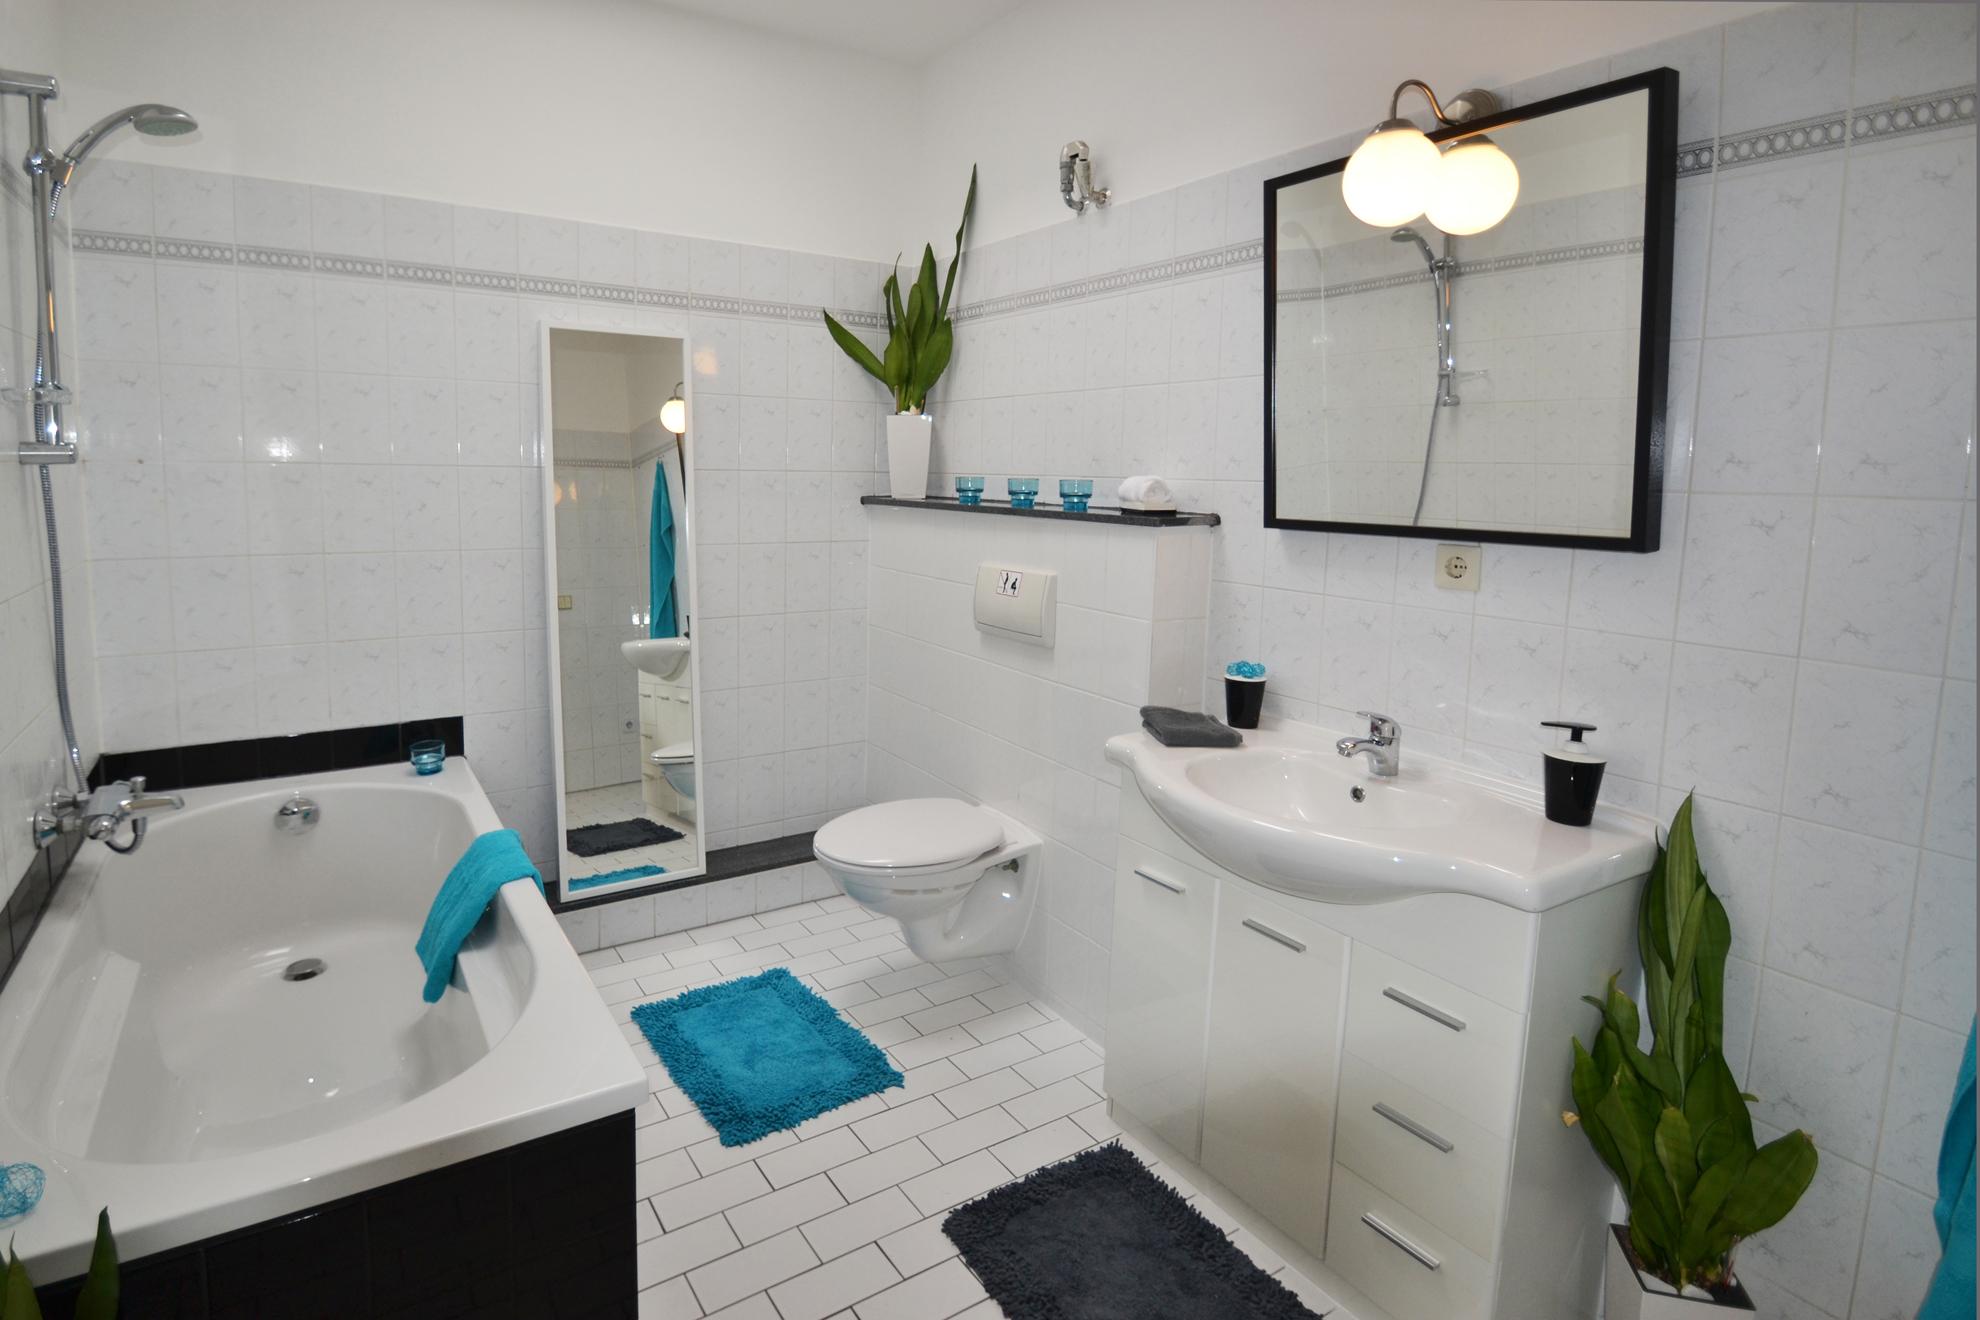 Badezimmer nach homestaging #badezimmer #weißefliesen #schwarzebadewanne ©wohnPerfektion